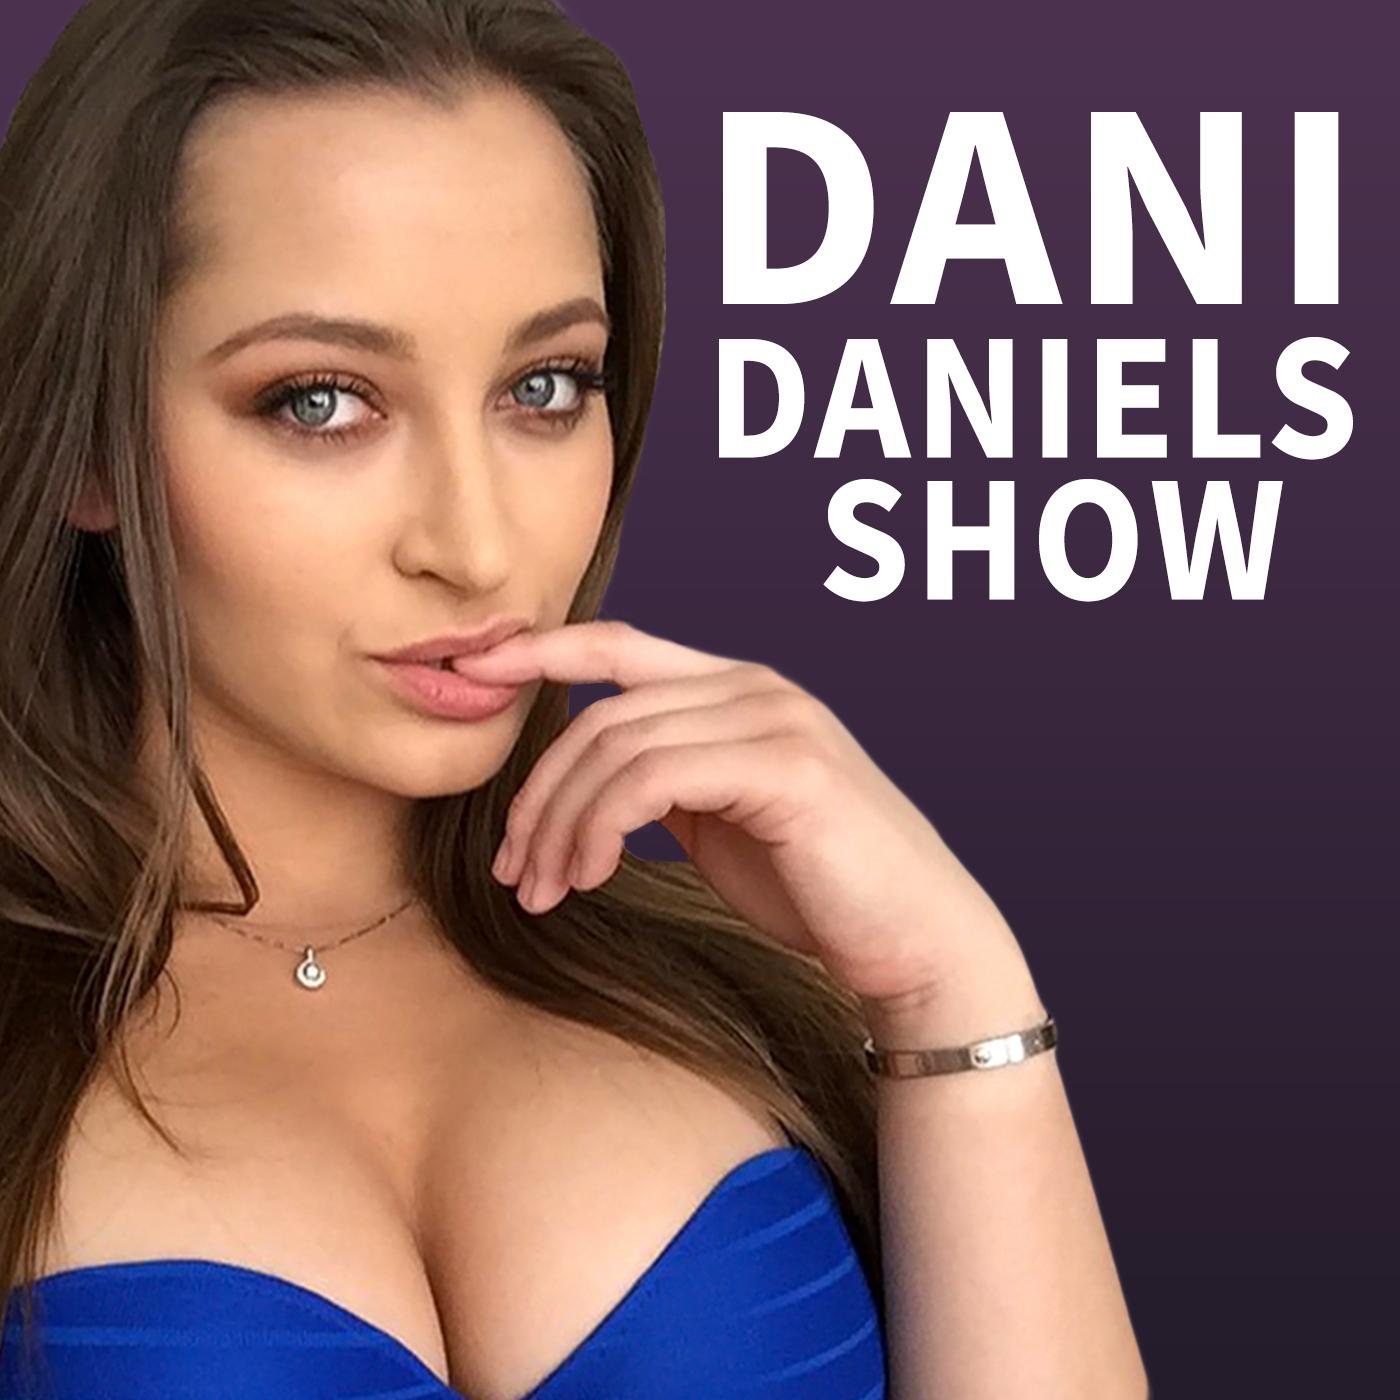 Dani Daniels Porn Star - Dani Daniels Show